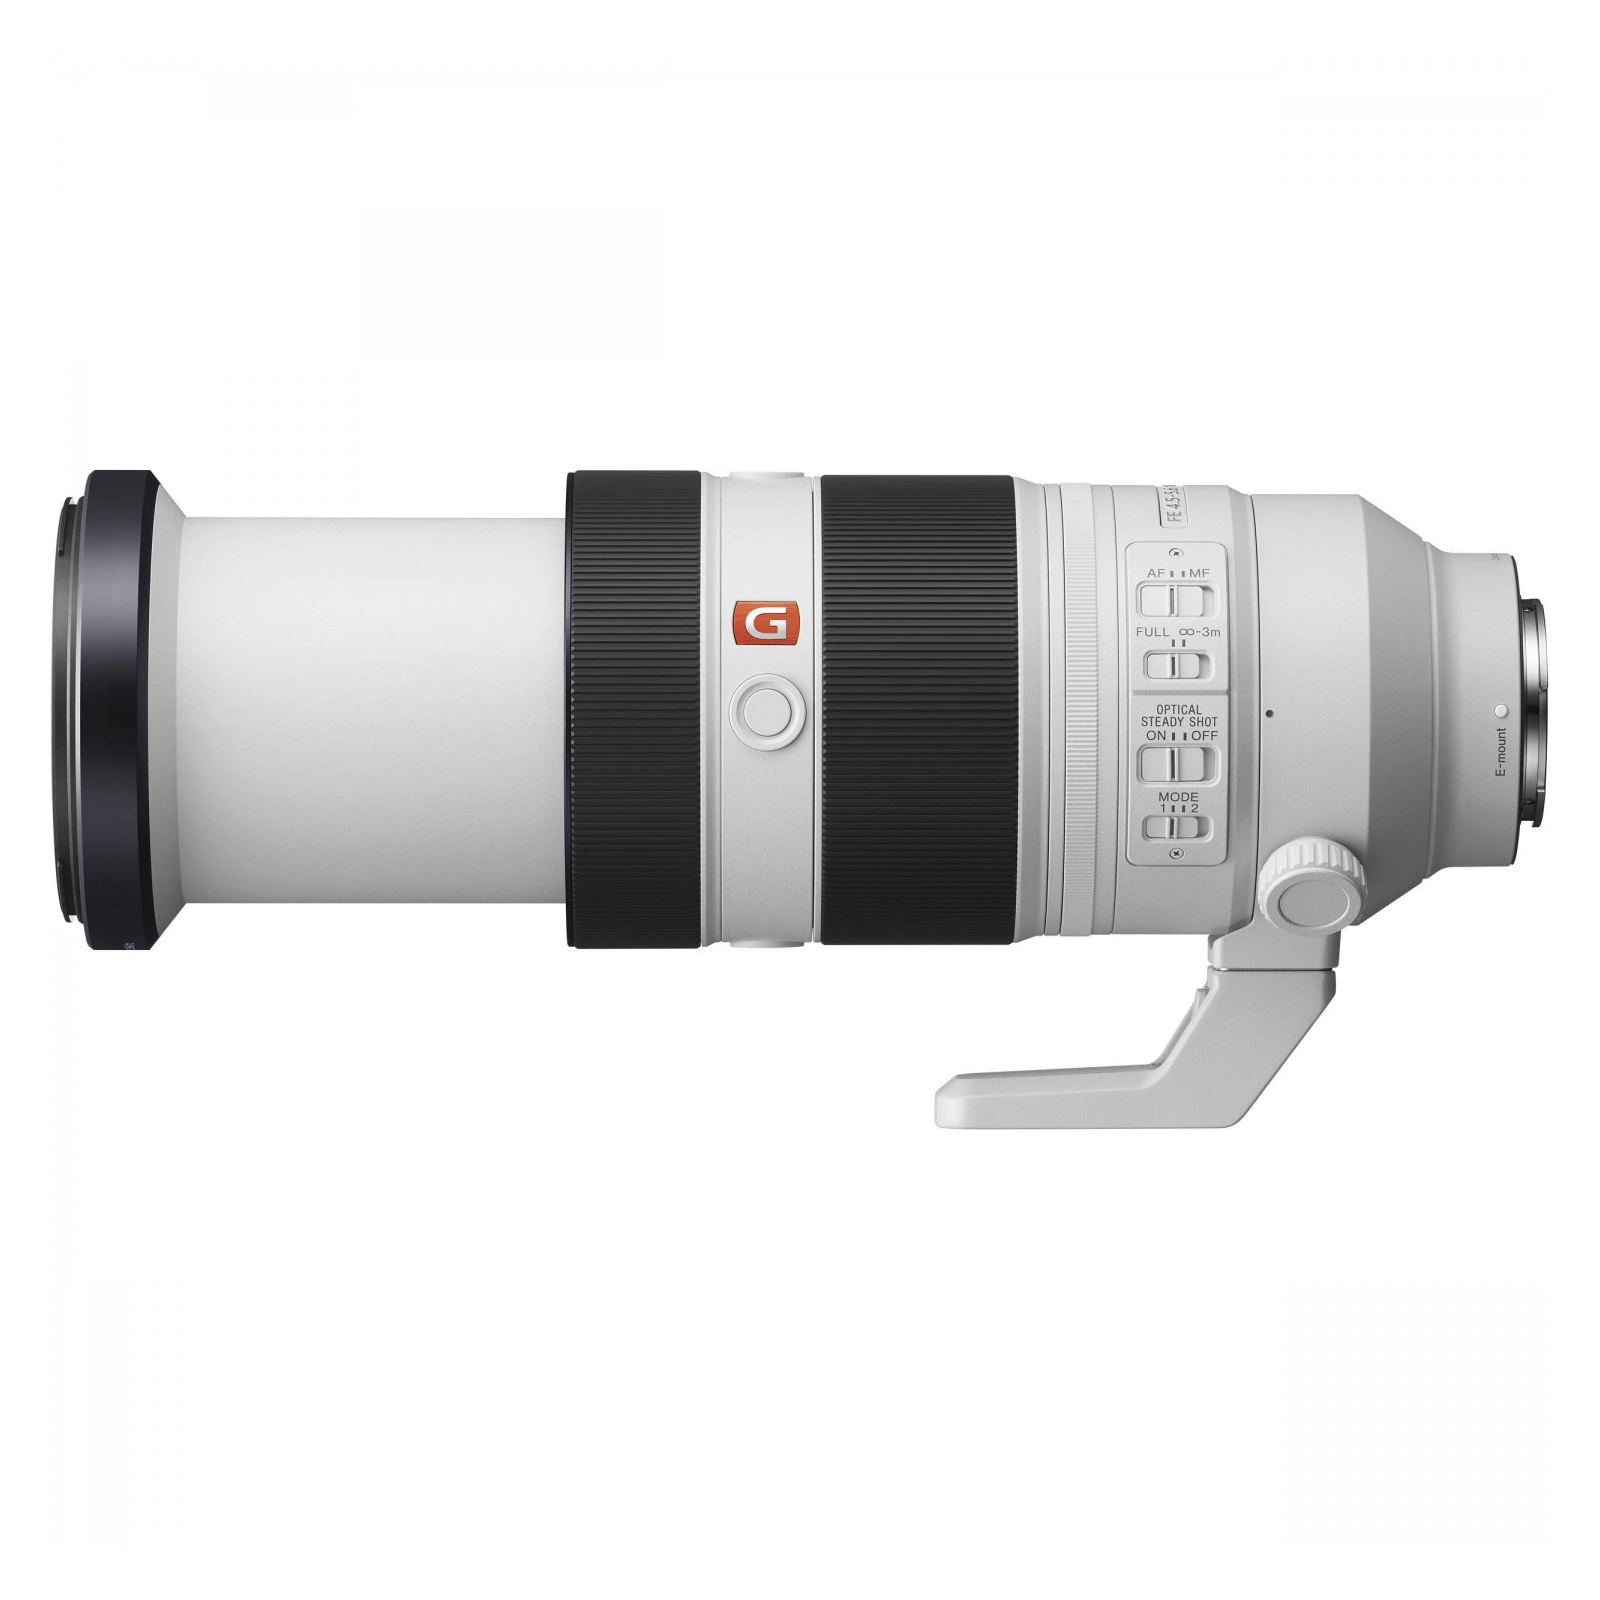 Об'єктив Sony 100-400mm, f/4.5-5.6 GM OSS для камер NEX FF (SEL100400GM.SYX) зображення 3